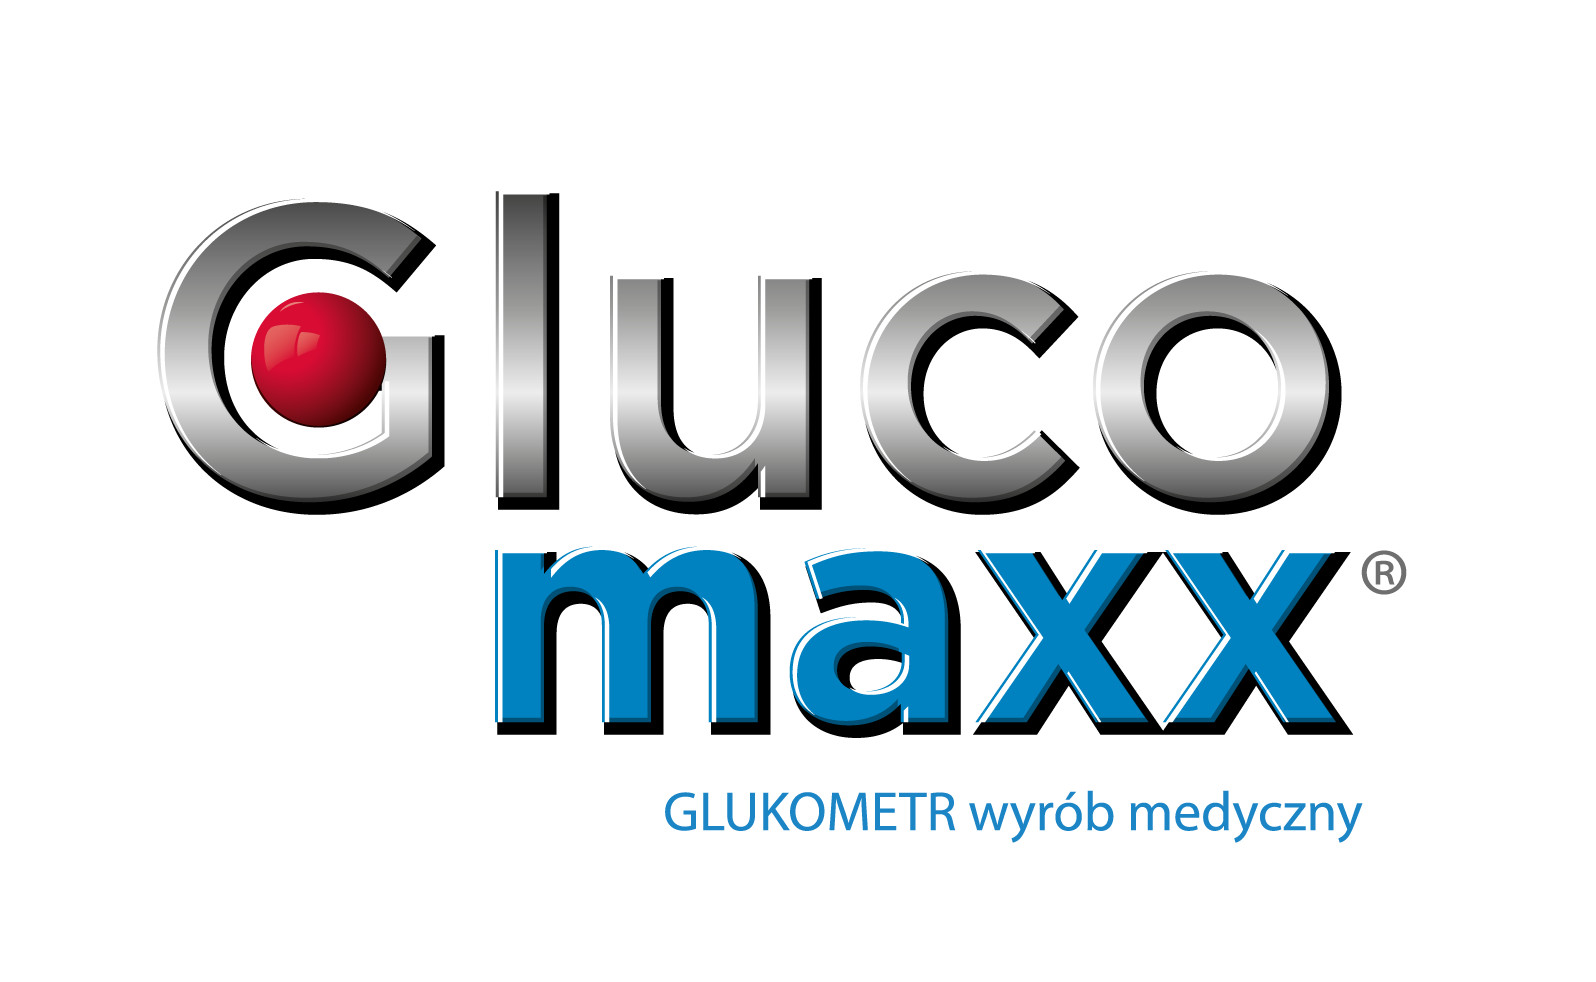 Gluco maxx - GLUKOMETR wyrób medyczny